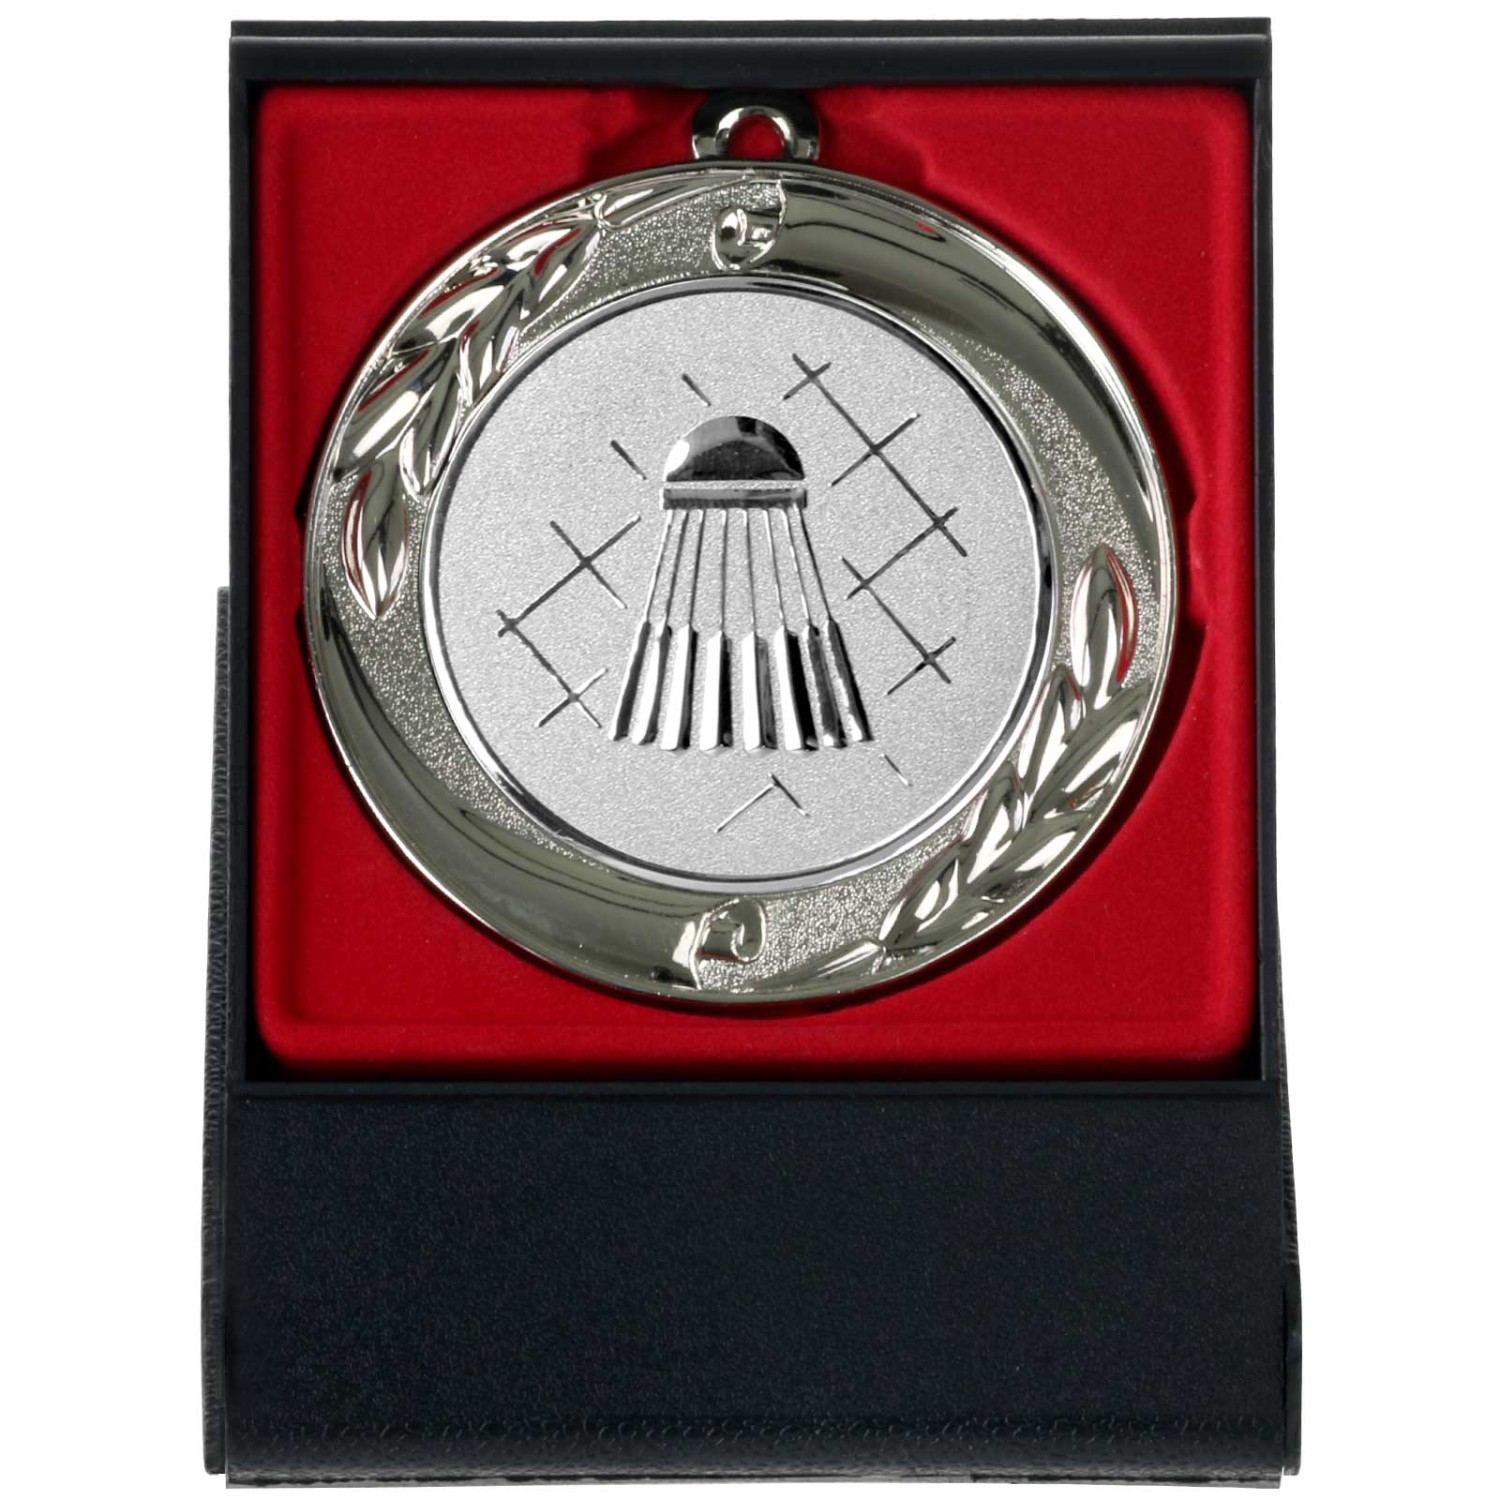 1. Foto Badminton Federball Medaille gold silber bronze oder im Set 70mm mit Etui als Aufsteller (Sorte: bronze)